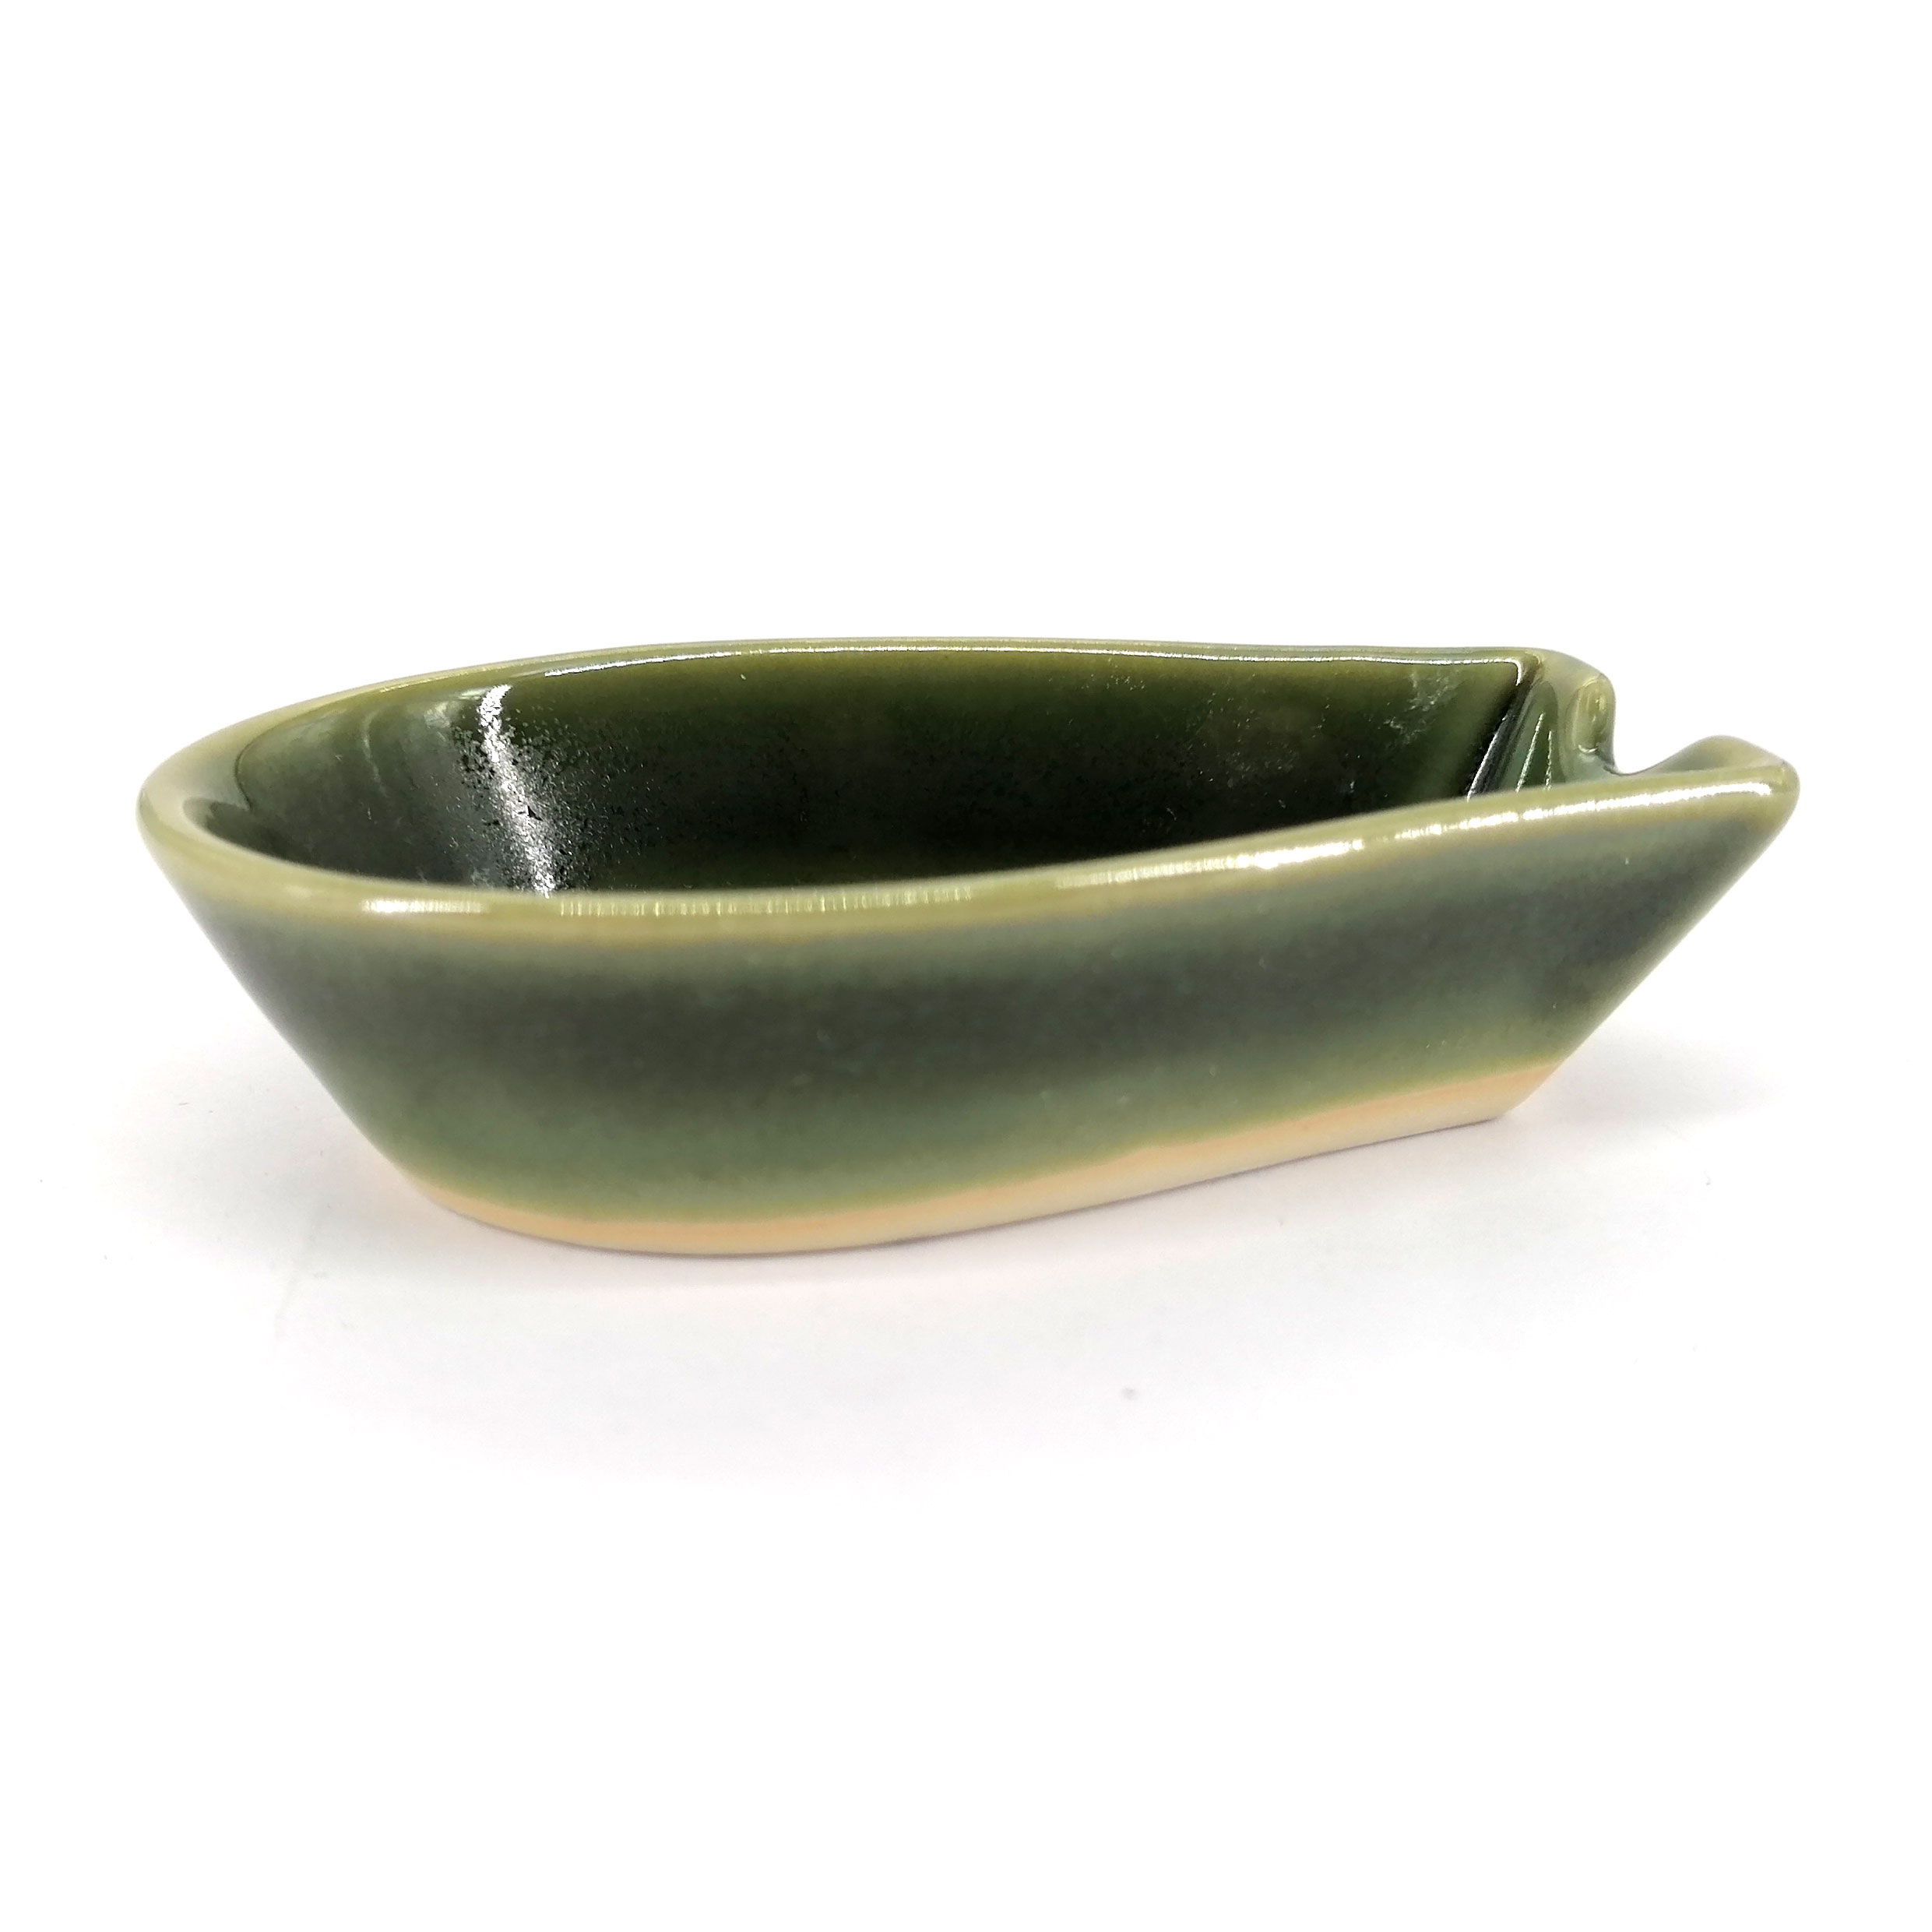 https://kyotoboutique.fr/22306/poggiamestolo-in-ceramica-verde-oribegurin.jpg